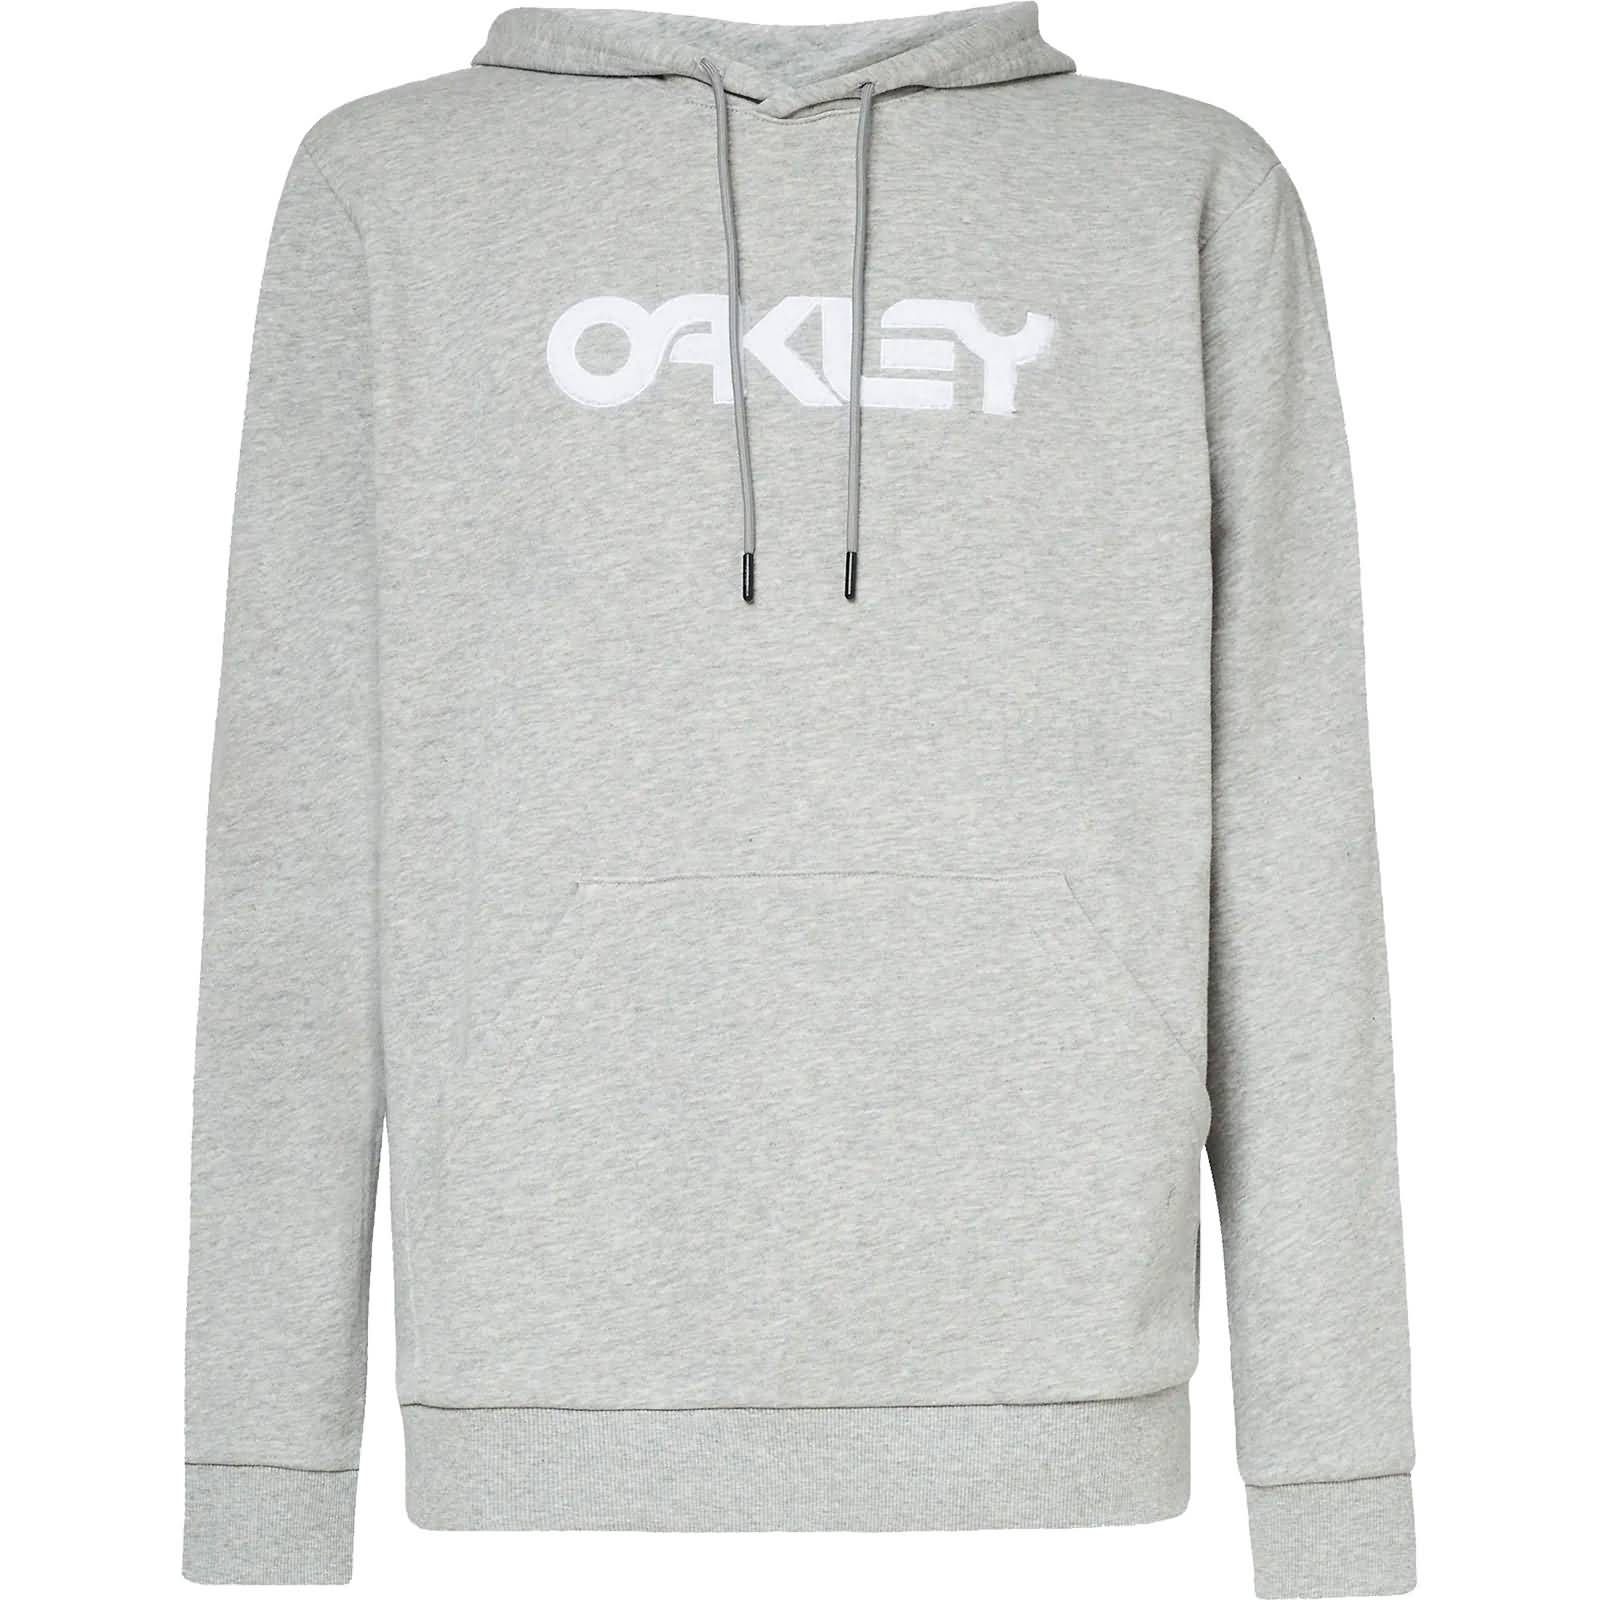 Oakley Teddy B1B Men's Hoody Pullover Sweatshirts-FOA403056